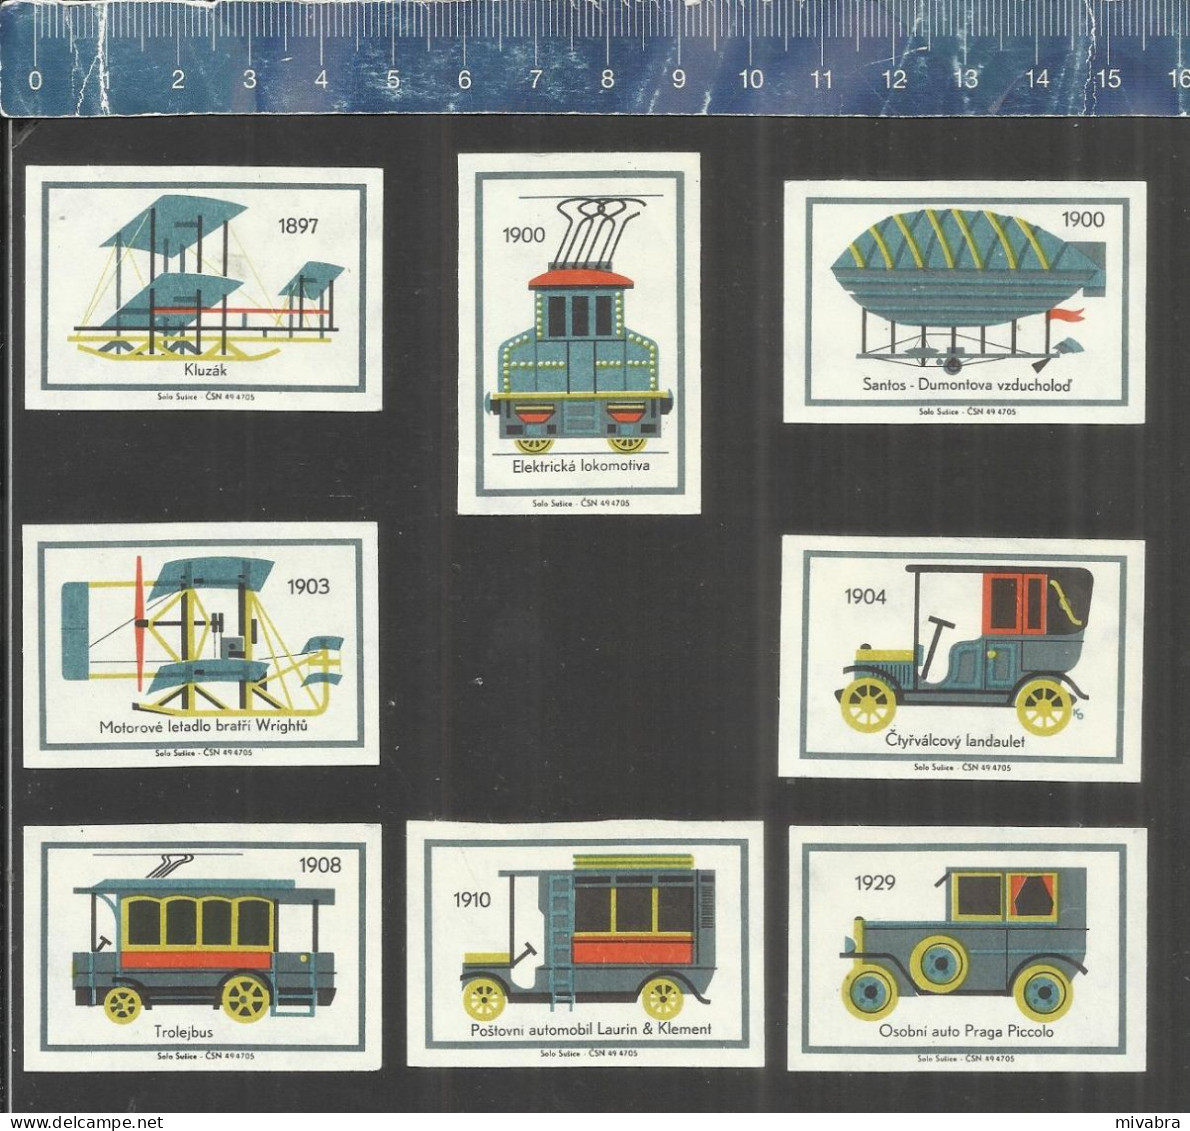 DEVELOPMENT OF TRANSPORT - BALLOONS SHIPS CARS BICYCLES ZEPPELIN LOCOMOTIVES ETC... CZECHOSLOVAKIAN MATCHBOX LABELS 1968 - Cajas De Cerillas - Etiquetas